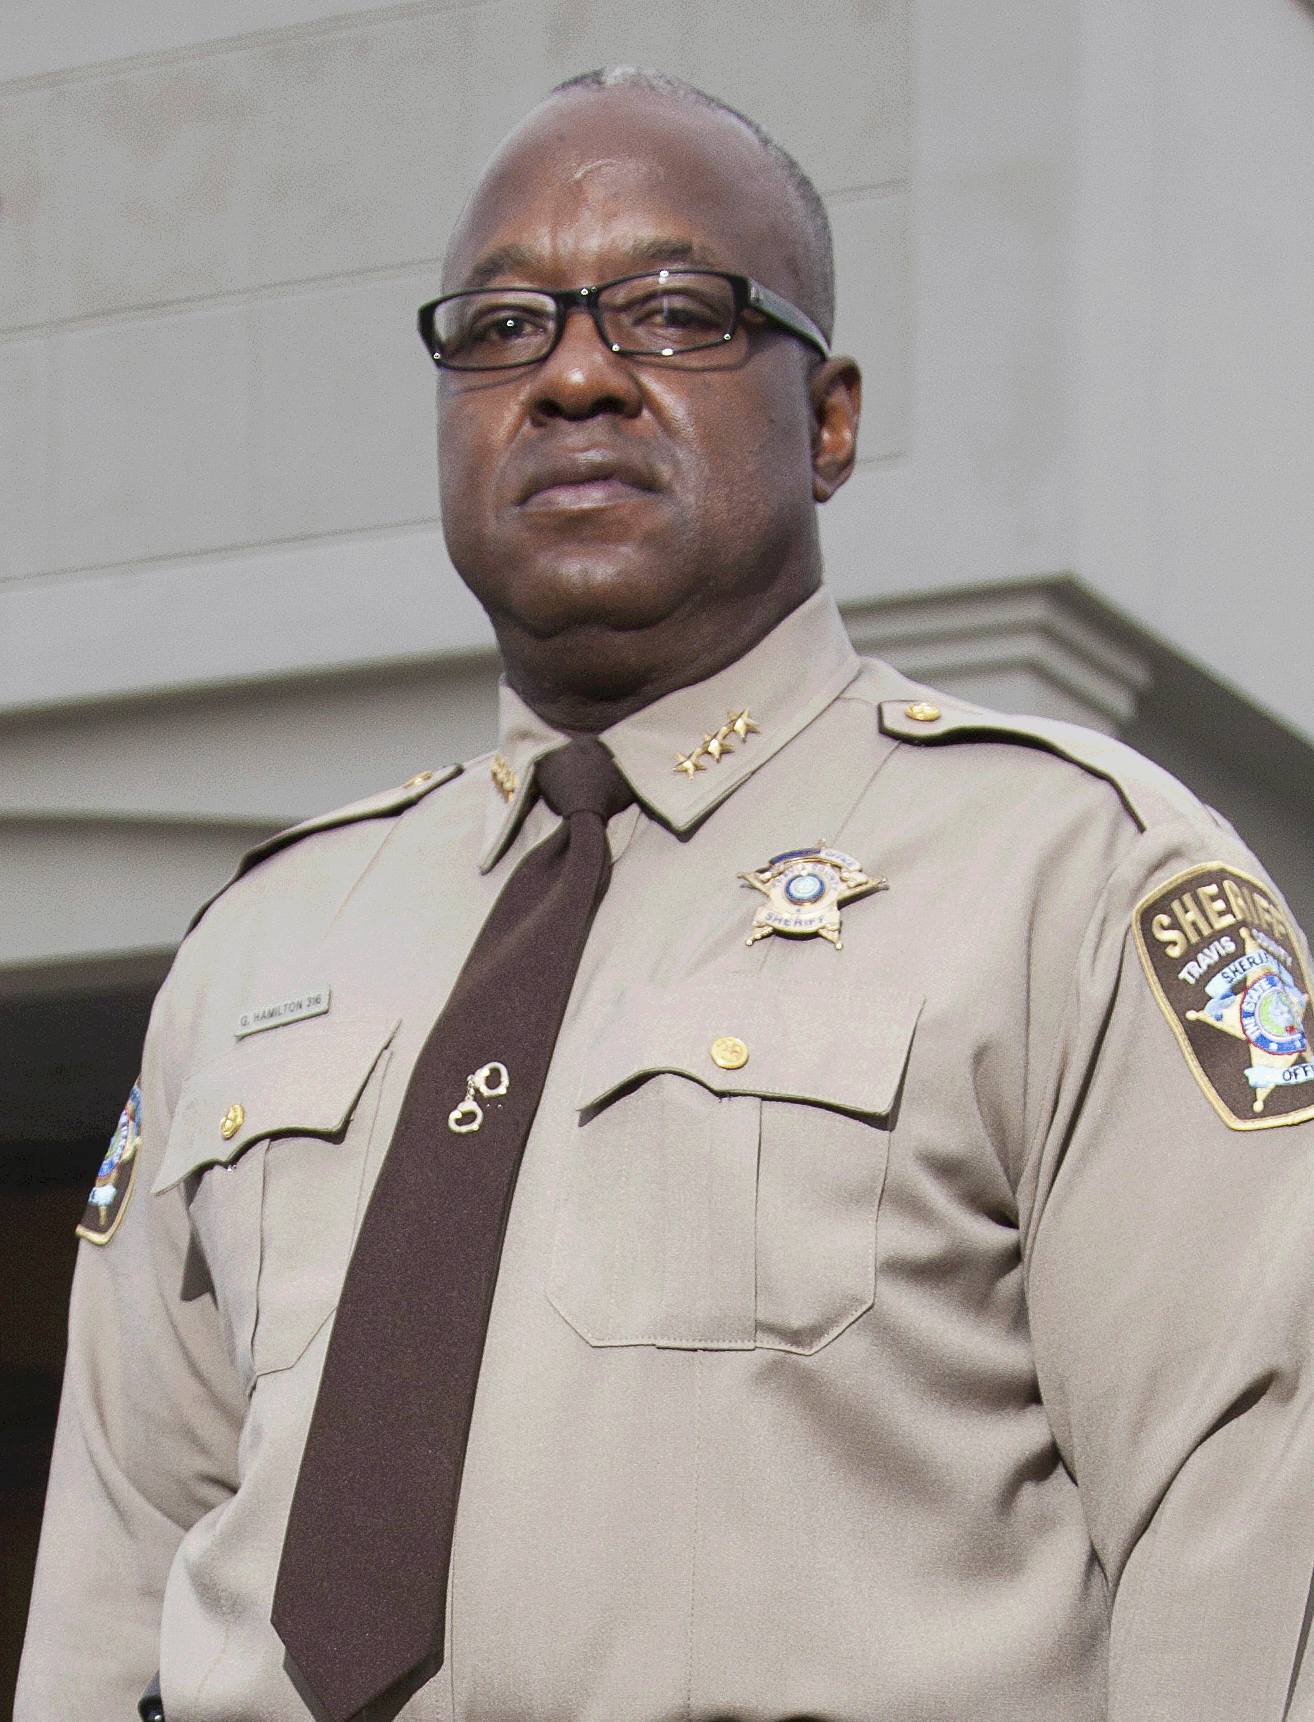 Sheriff Greg Hamilton